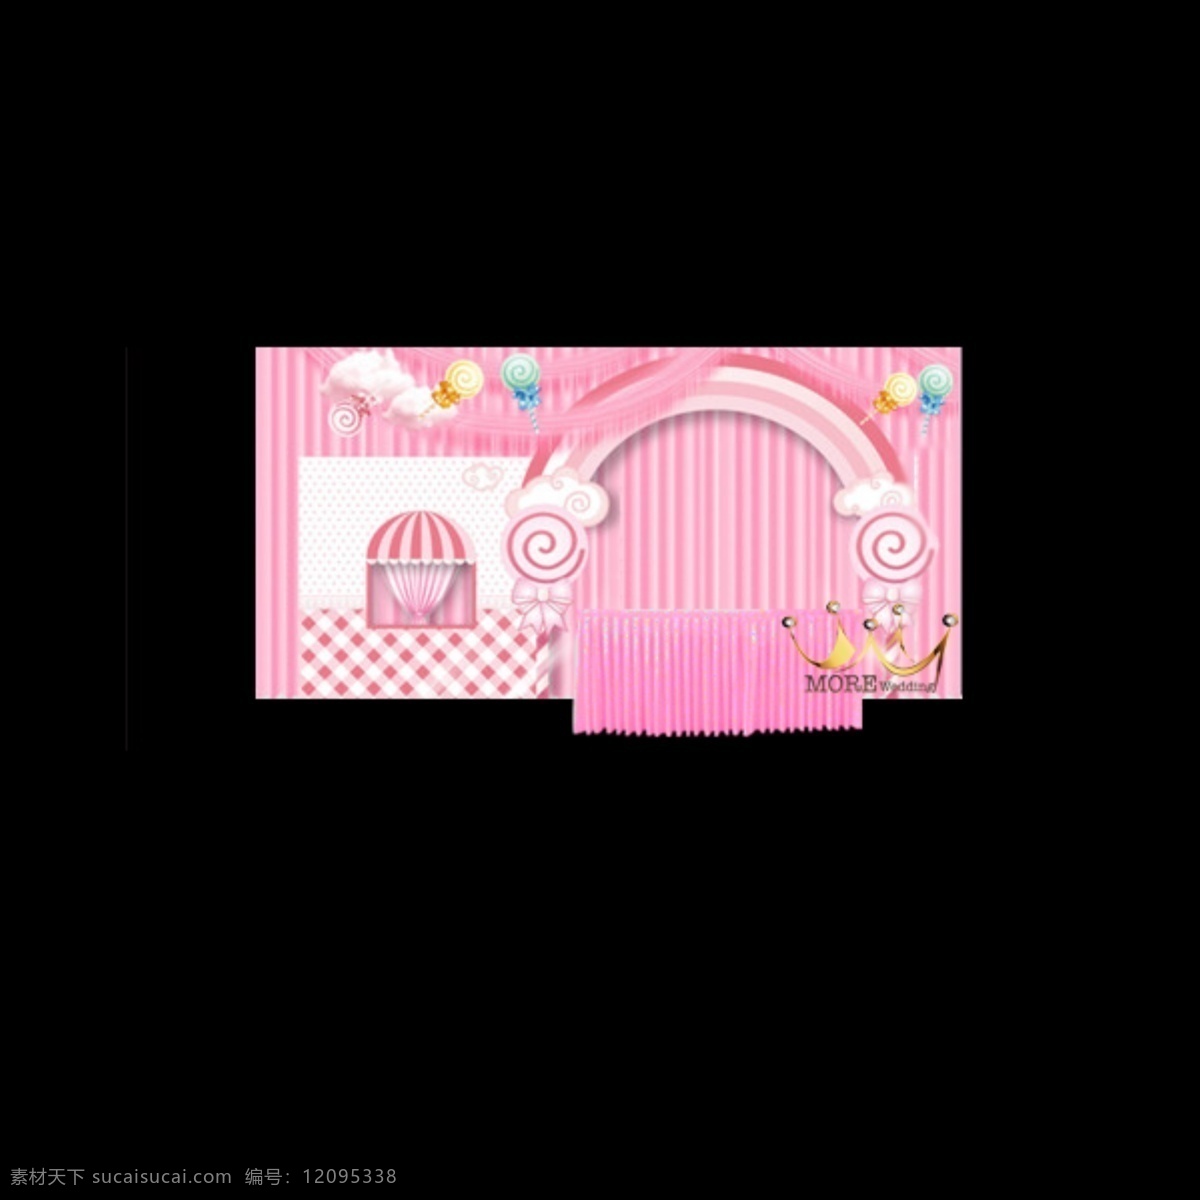 宁波 摩尔 婚礼 宝宝 宴 宝宝宴设计 百日宴 hellokitty 凯蒂猫 粉色 布幔 甜品 拱门 棒棒糖 白色